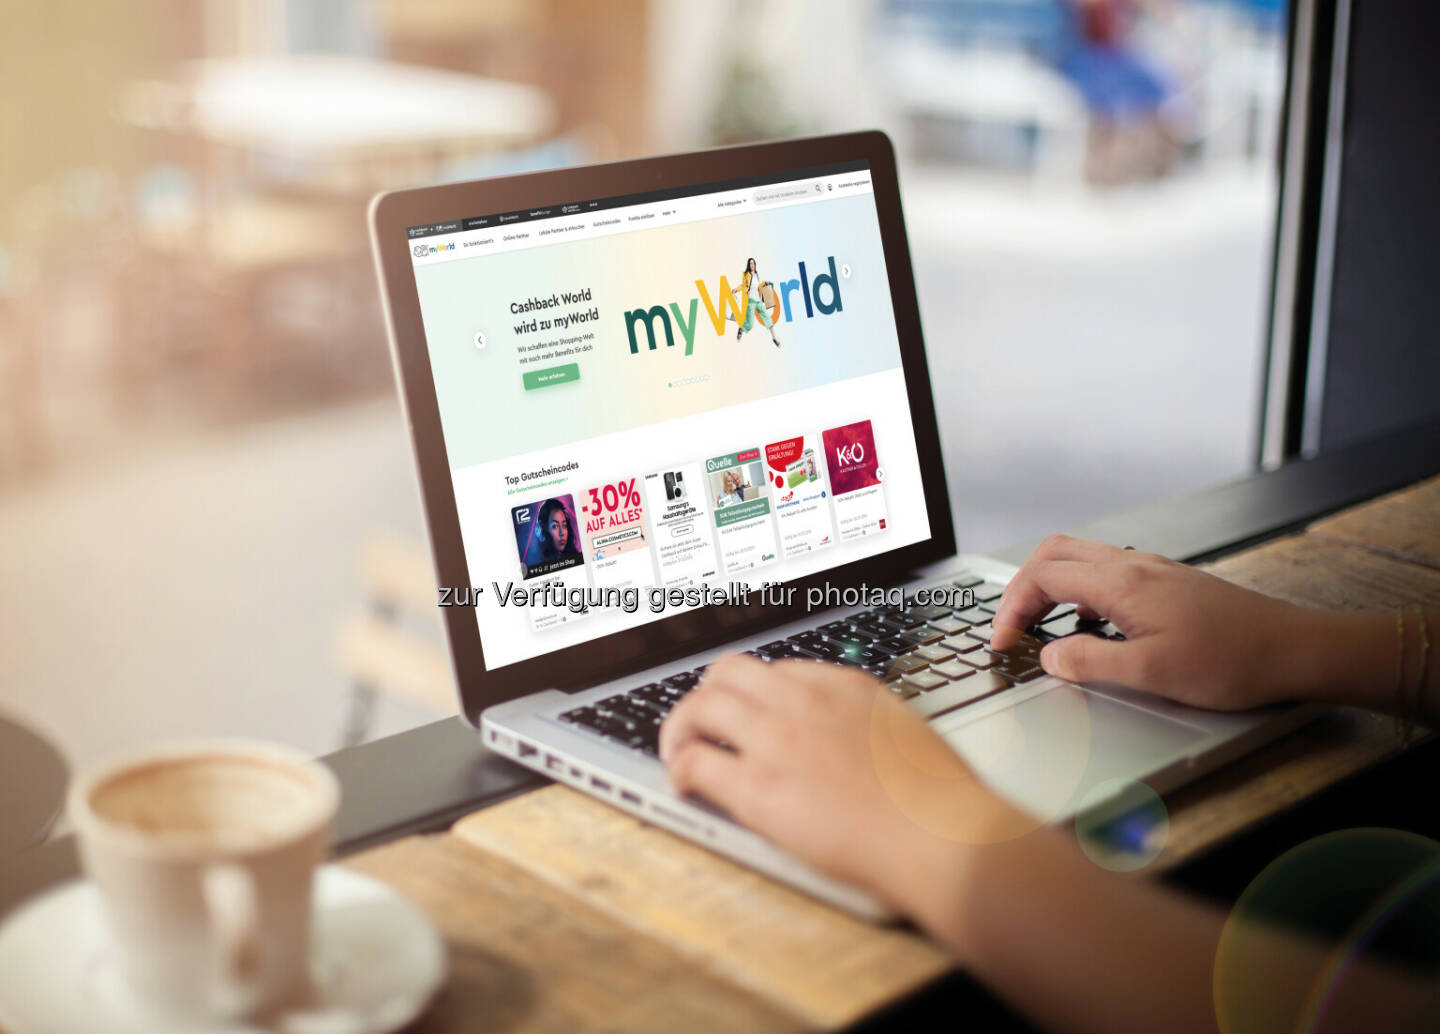 mediaWorld Marketing GmbH: Cashback World wird zu myWorld, Die Cashback World, die internationale Shopping Community der myWorld Unternehmensgruppe, macht den nächsten großen Schritt: Sie wird mit dem konzerneigenen Online-Marktplatz zusammengeführt und arbeitet in Zukunft unter dem Namen „myWorld“. Fotocredit:iStock/agrobacter